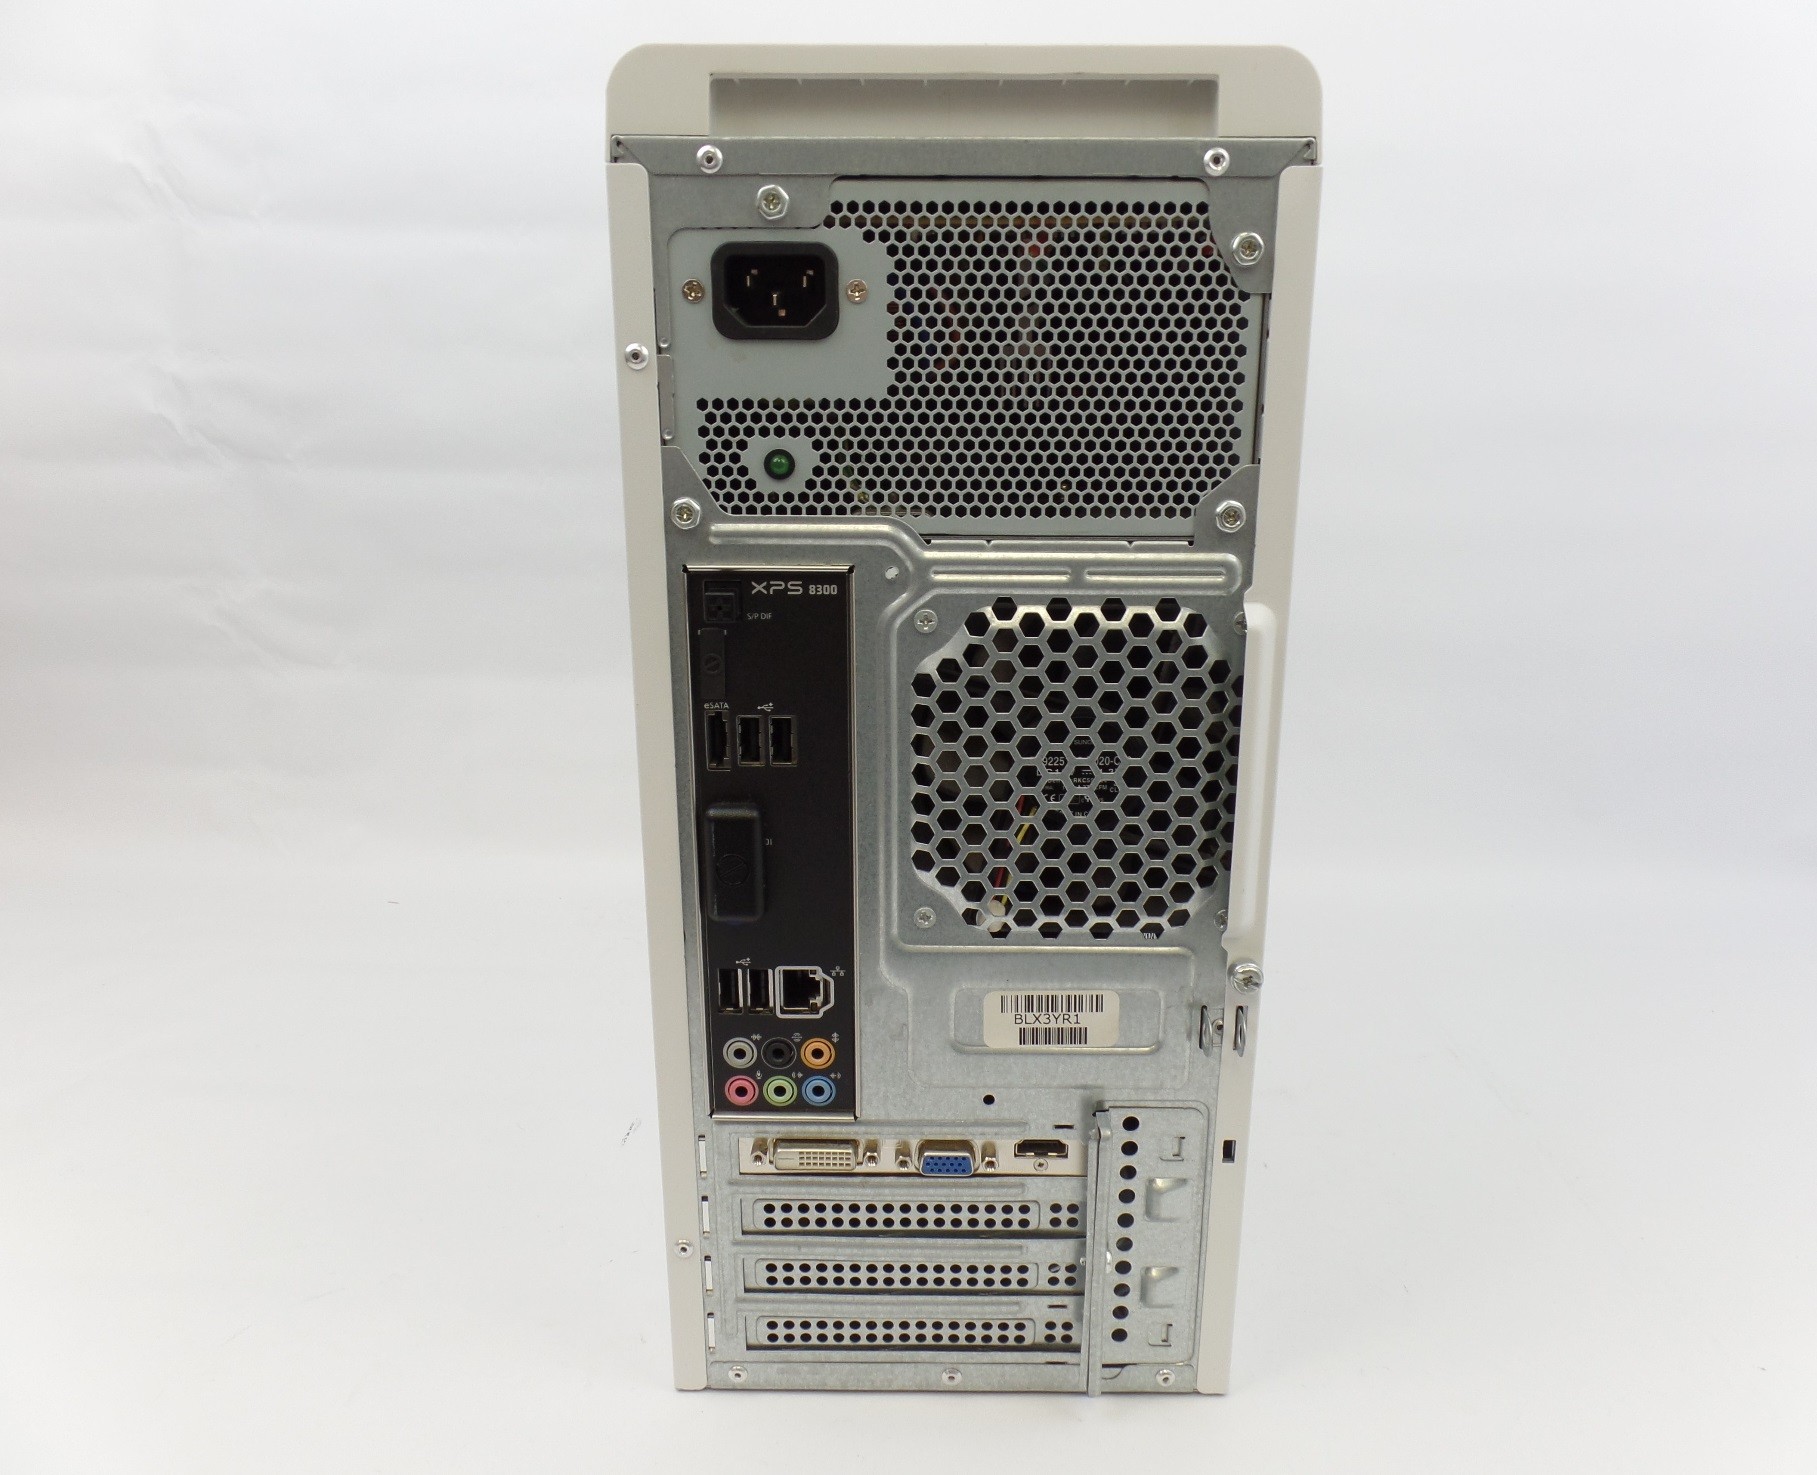 Dell XPS 8300 Core i7-2600 3.4GHz 8GB 750GB HDD W7P Desktop PC - Dell - Desktop Systems